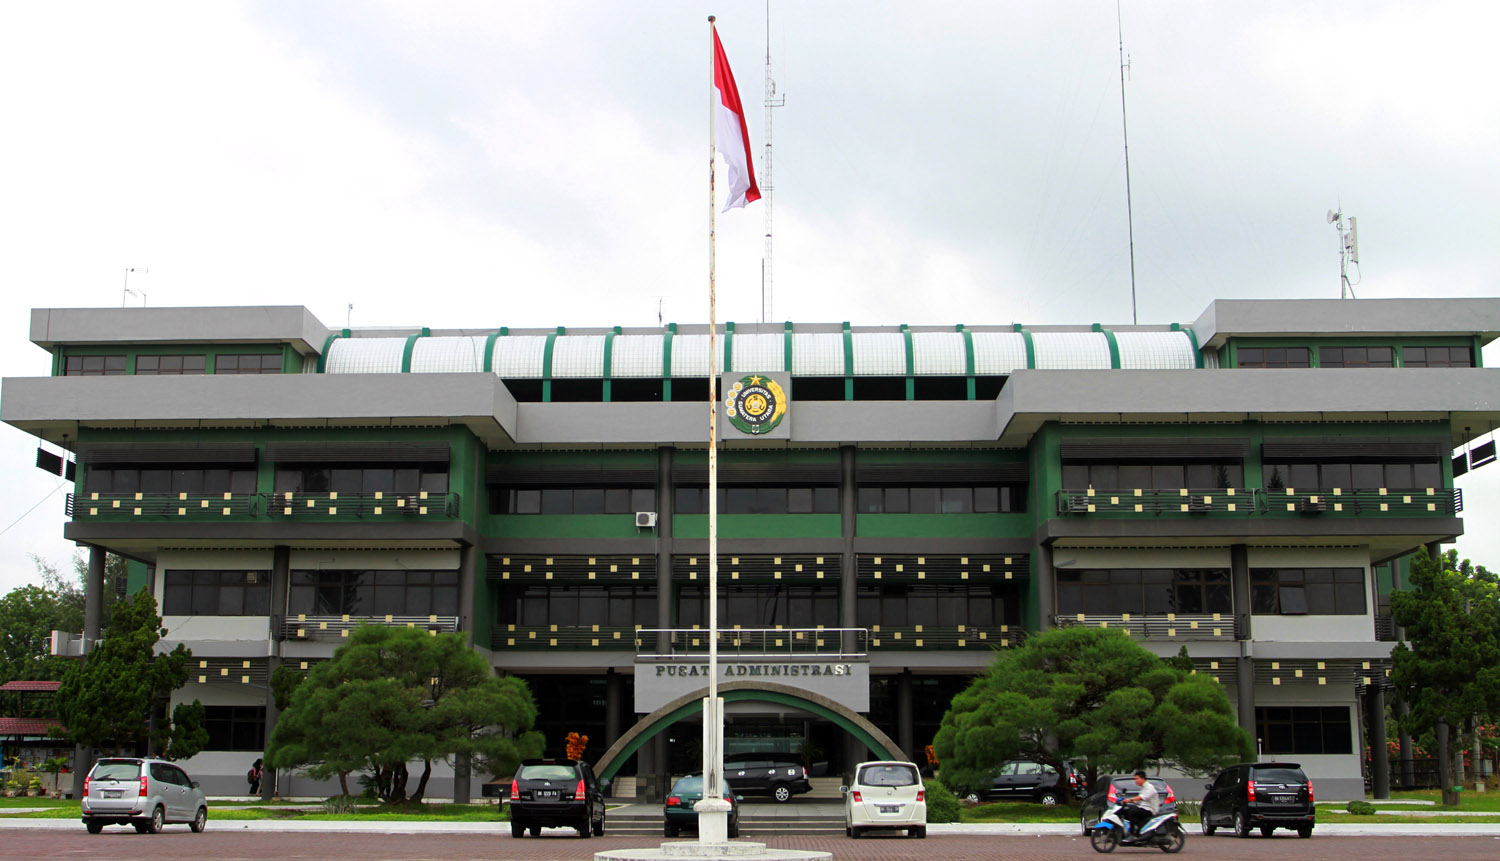 Perguruan Tinggi Favorit - Universitas Sumatera Utara